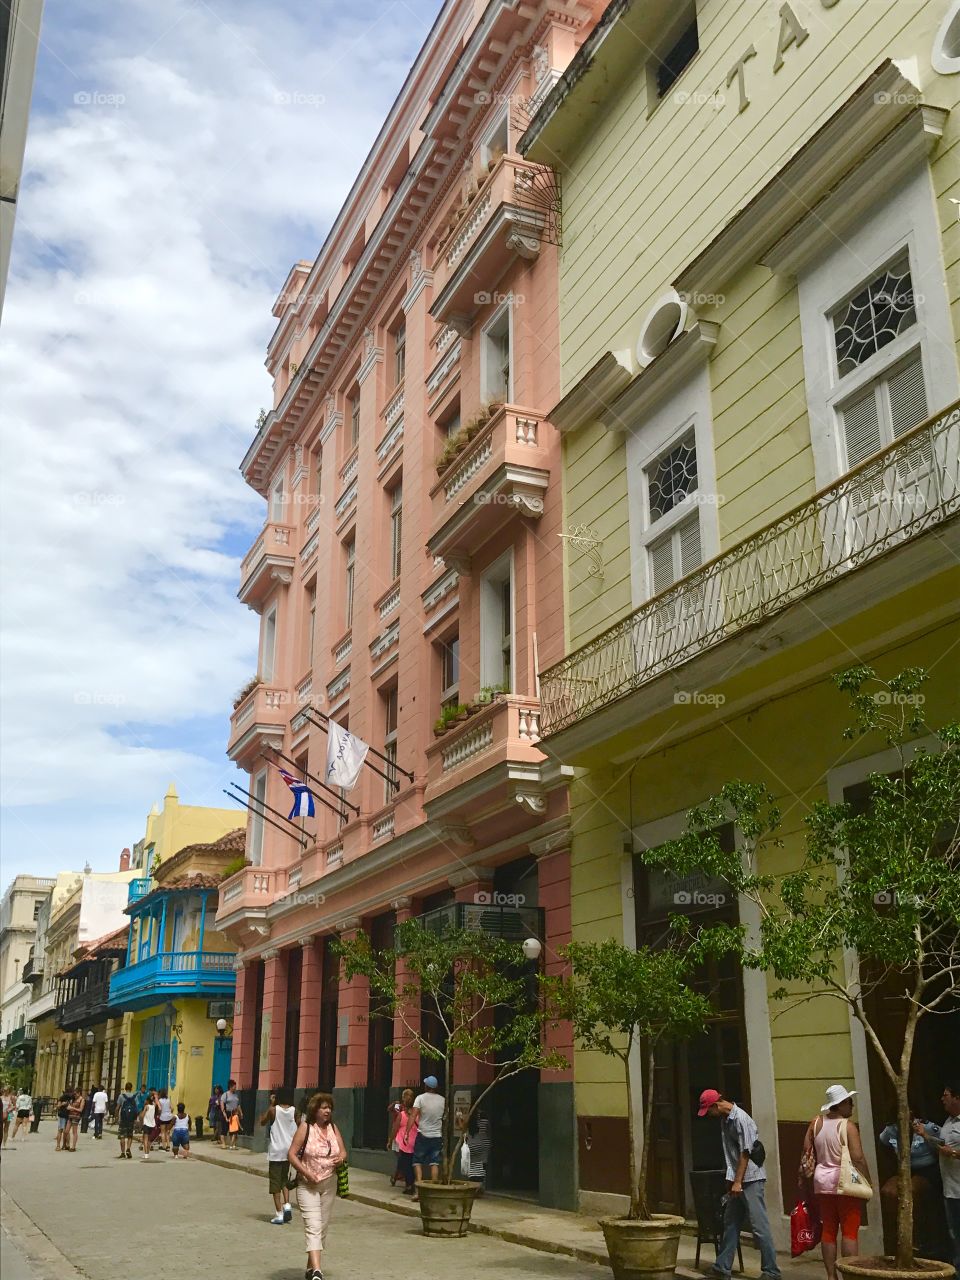 Street in Havana, Cuba